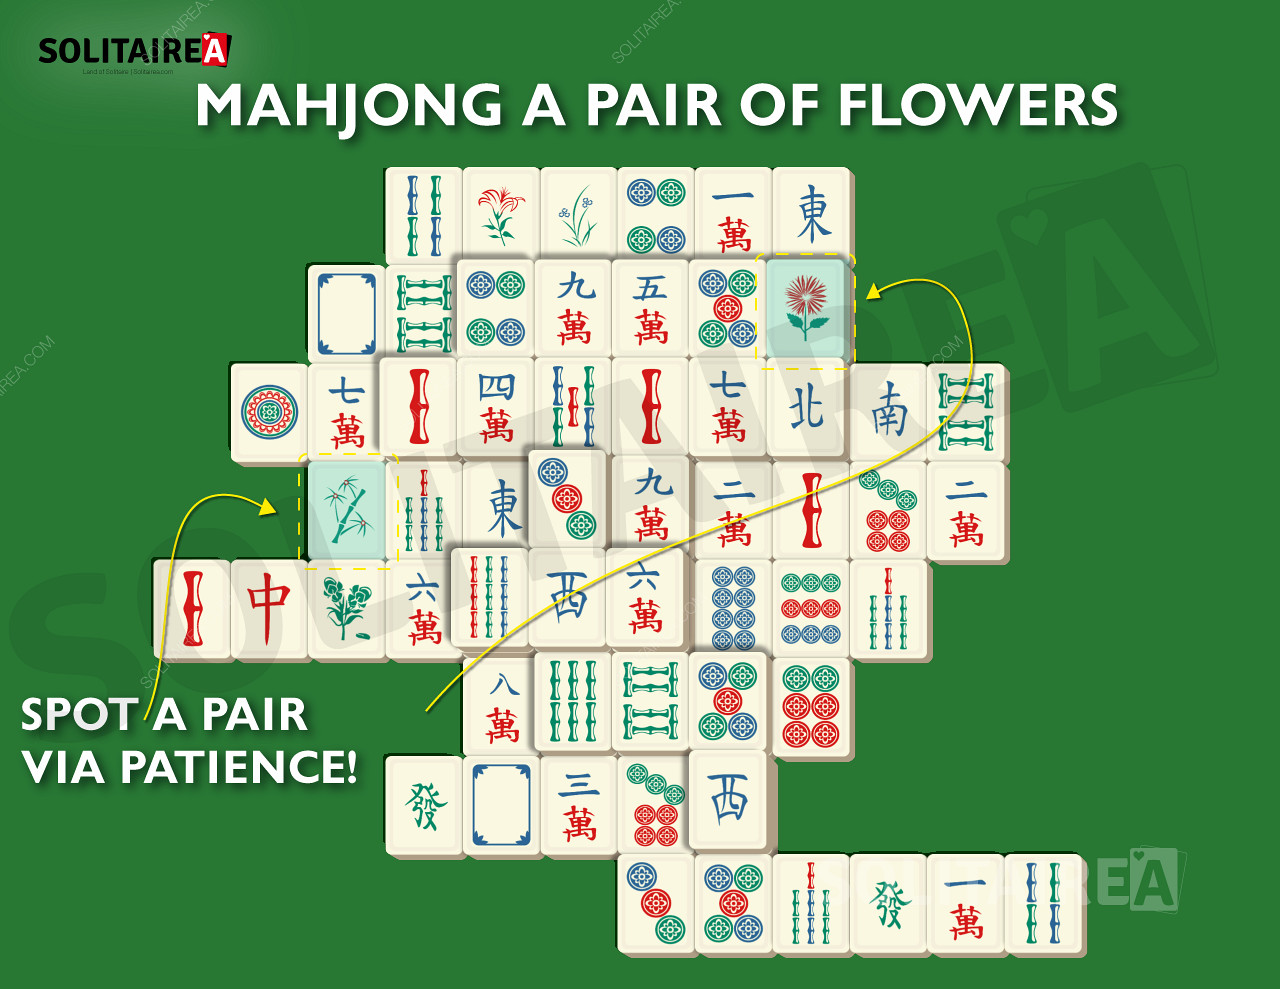 Imagem do Mahjong Solitaire mostrando uma seleção típica de peças.